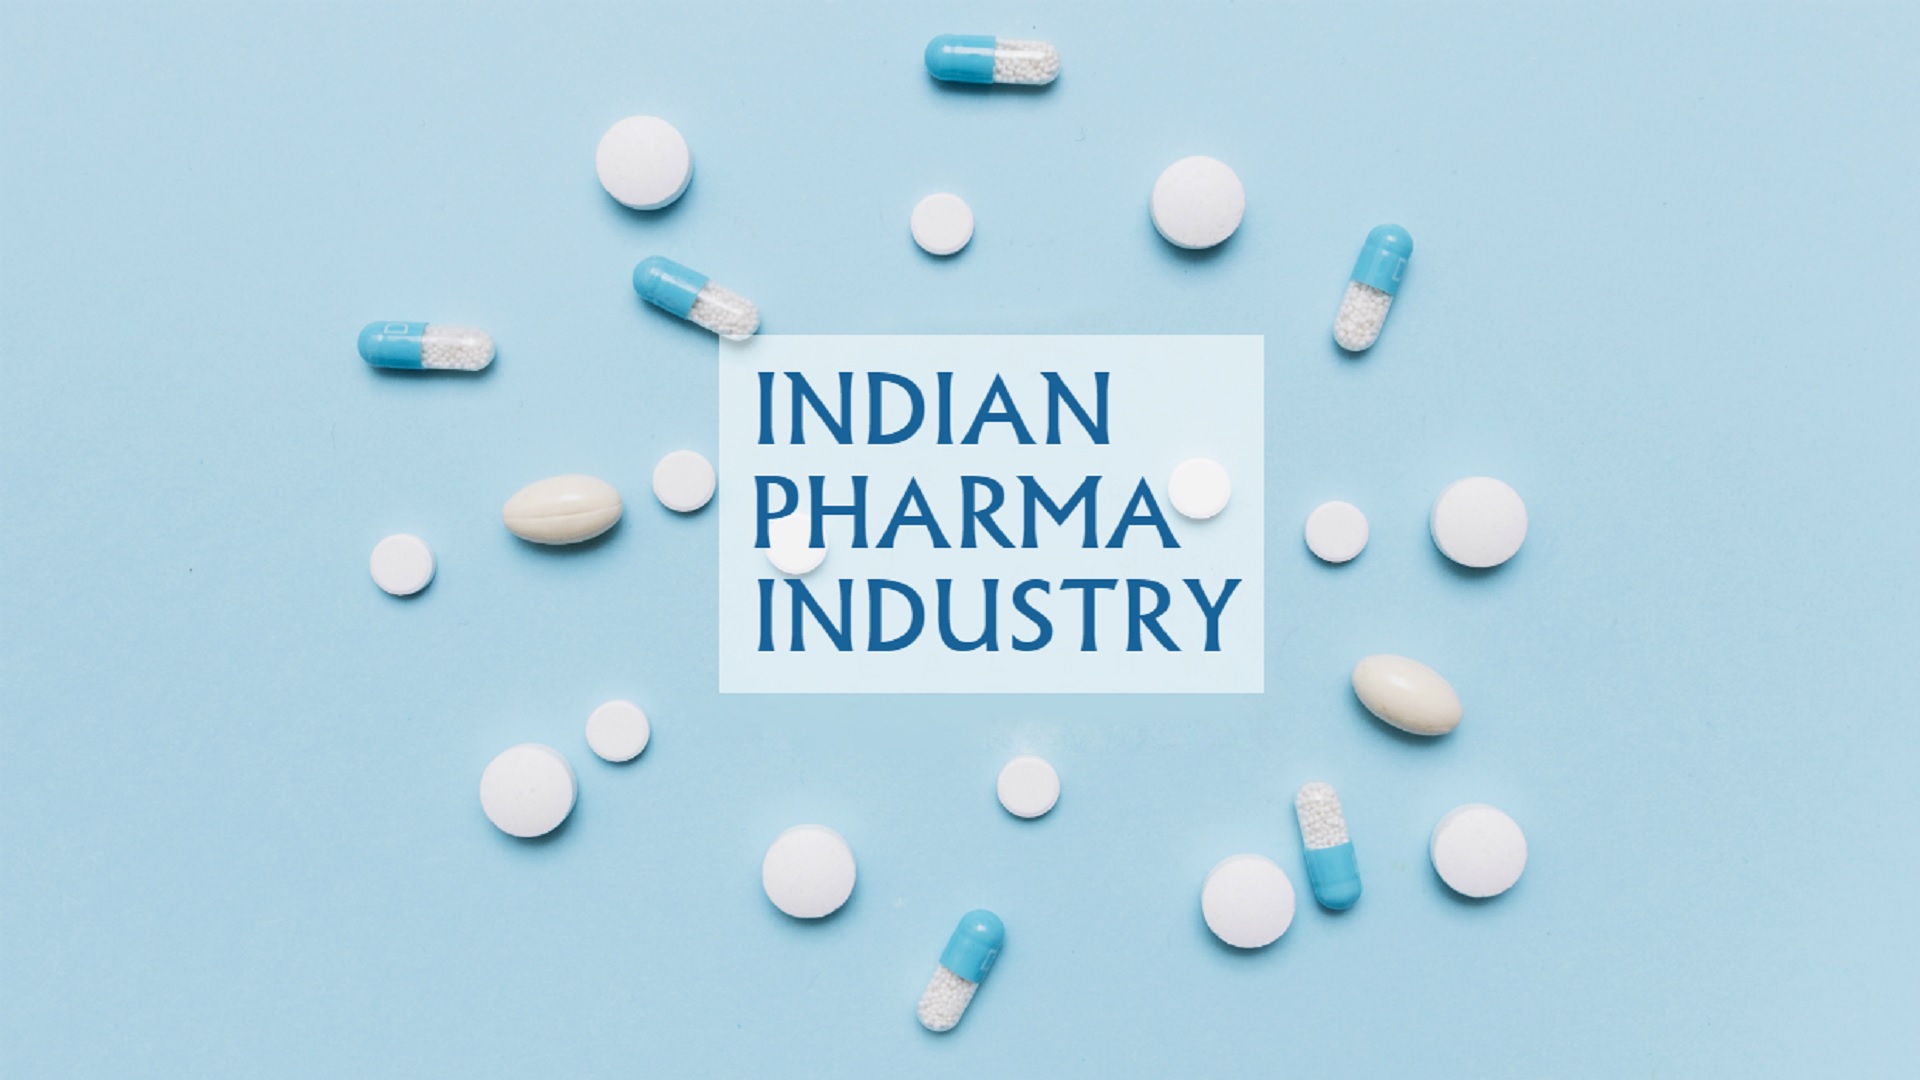 Προβληματισμό στην Ινδική φαρμακοβιομηχανία φέρνει η άρση των μέτρων